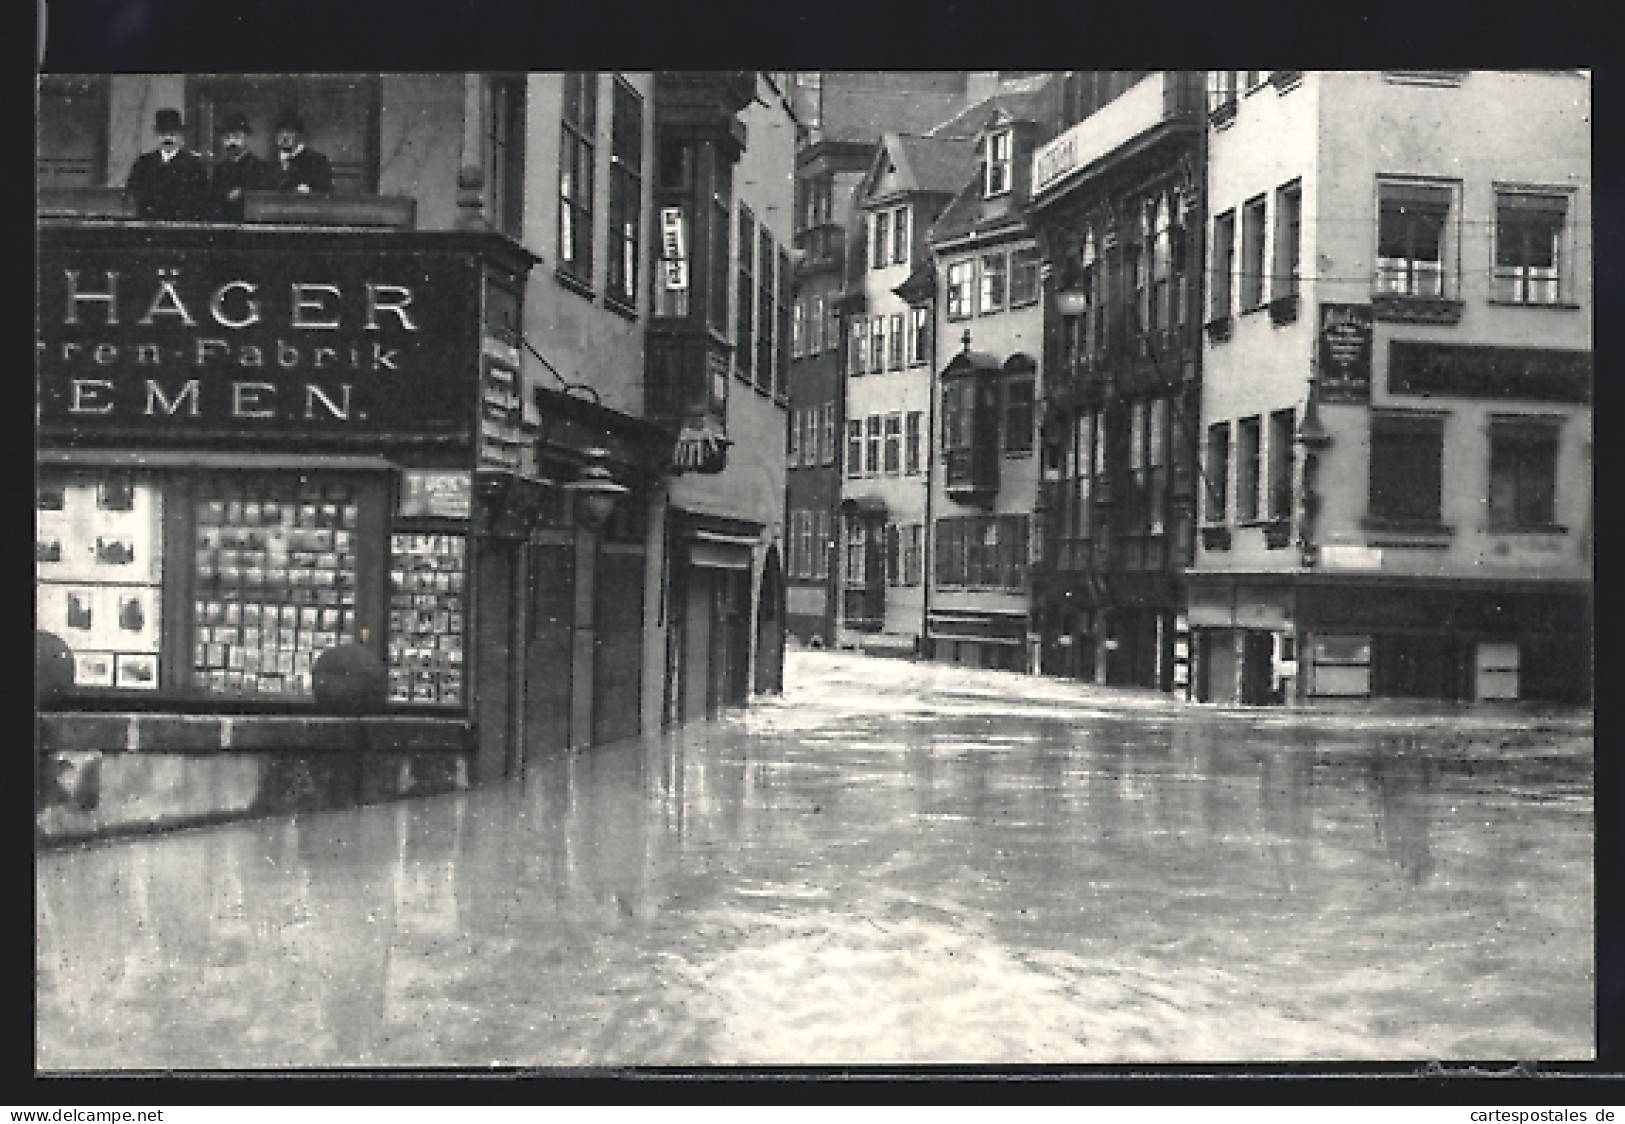 AK Nürnberg, Hochwasser-Katastrophe 1909 Mit Plobenhofstrasse  - Floods